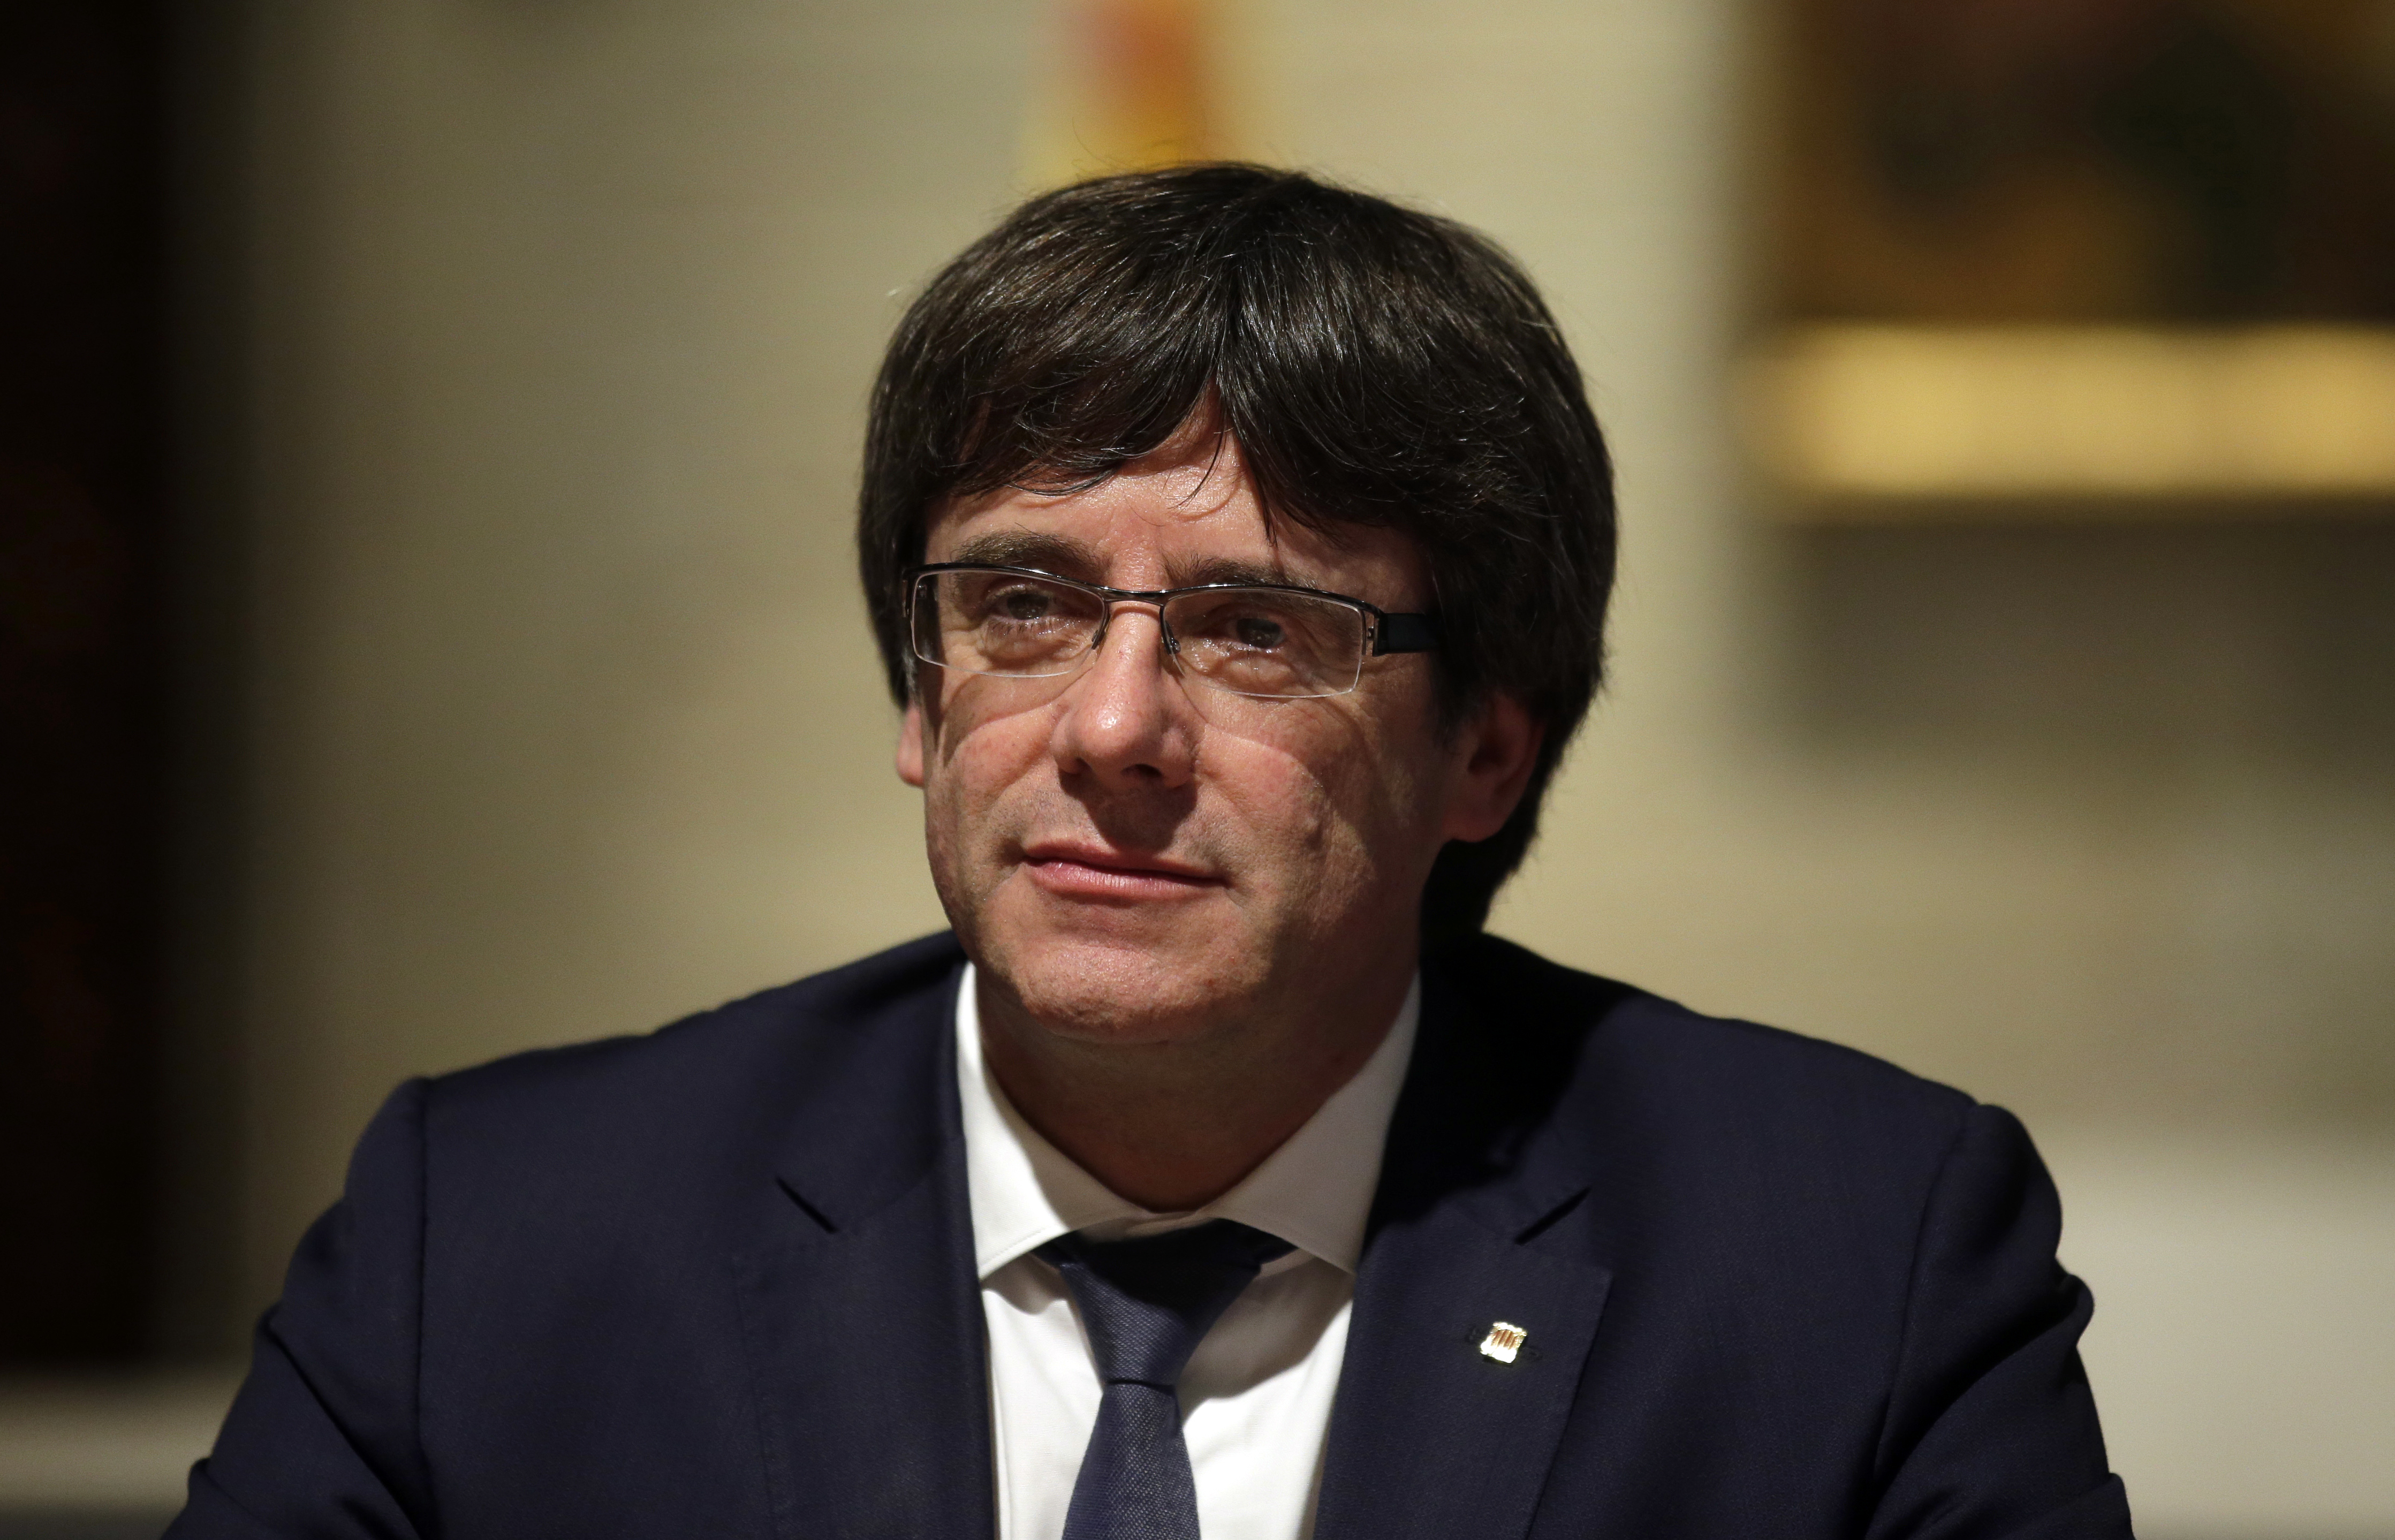 Gobierno español pide al líder catalán que no haga algo “irreversible”